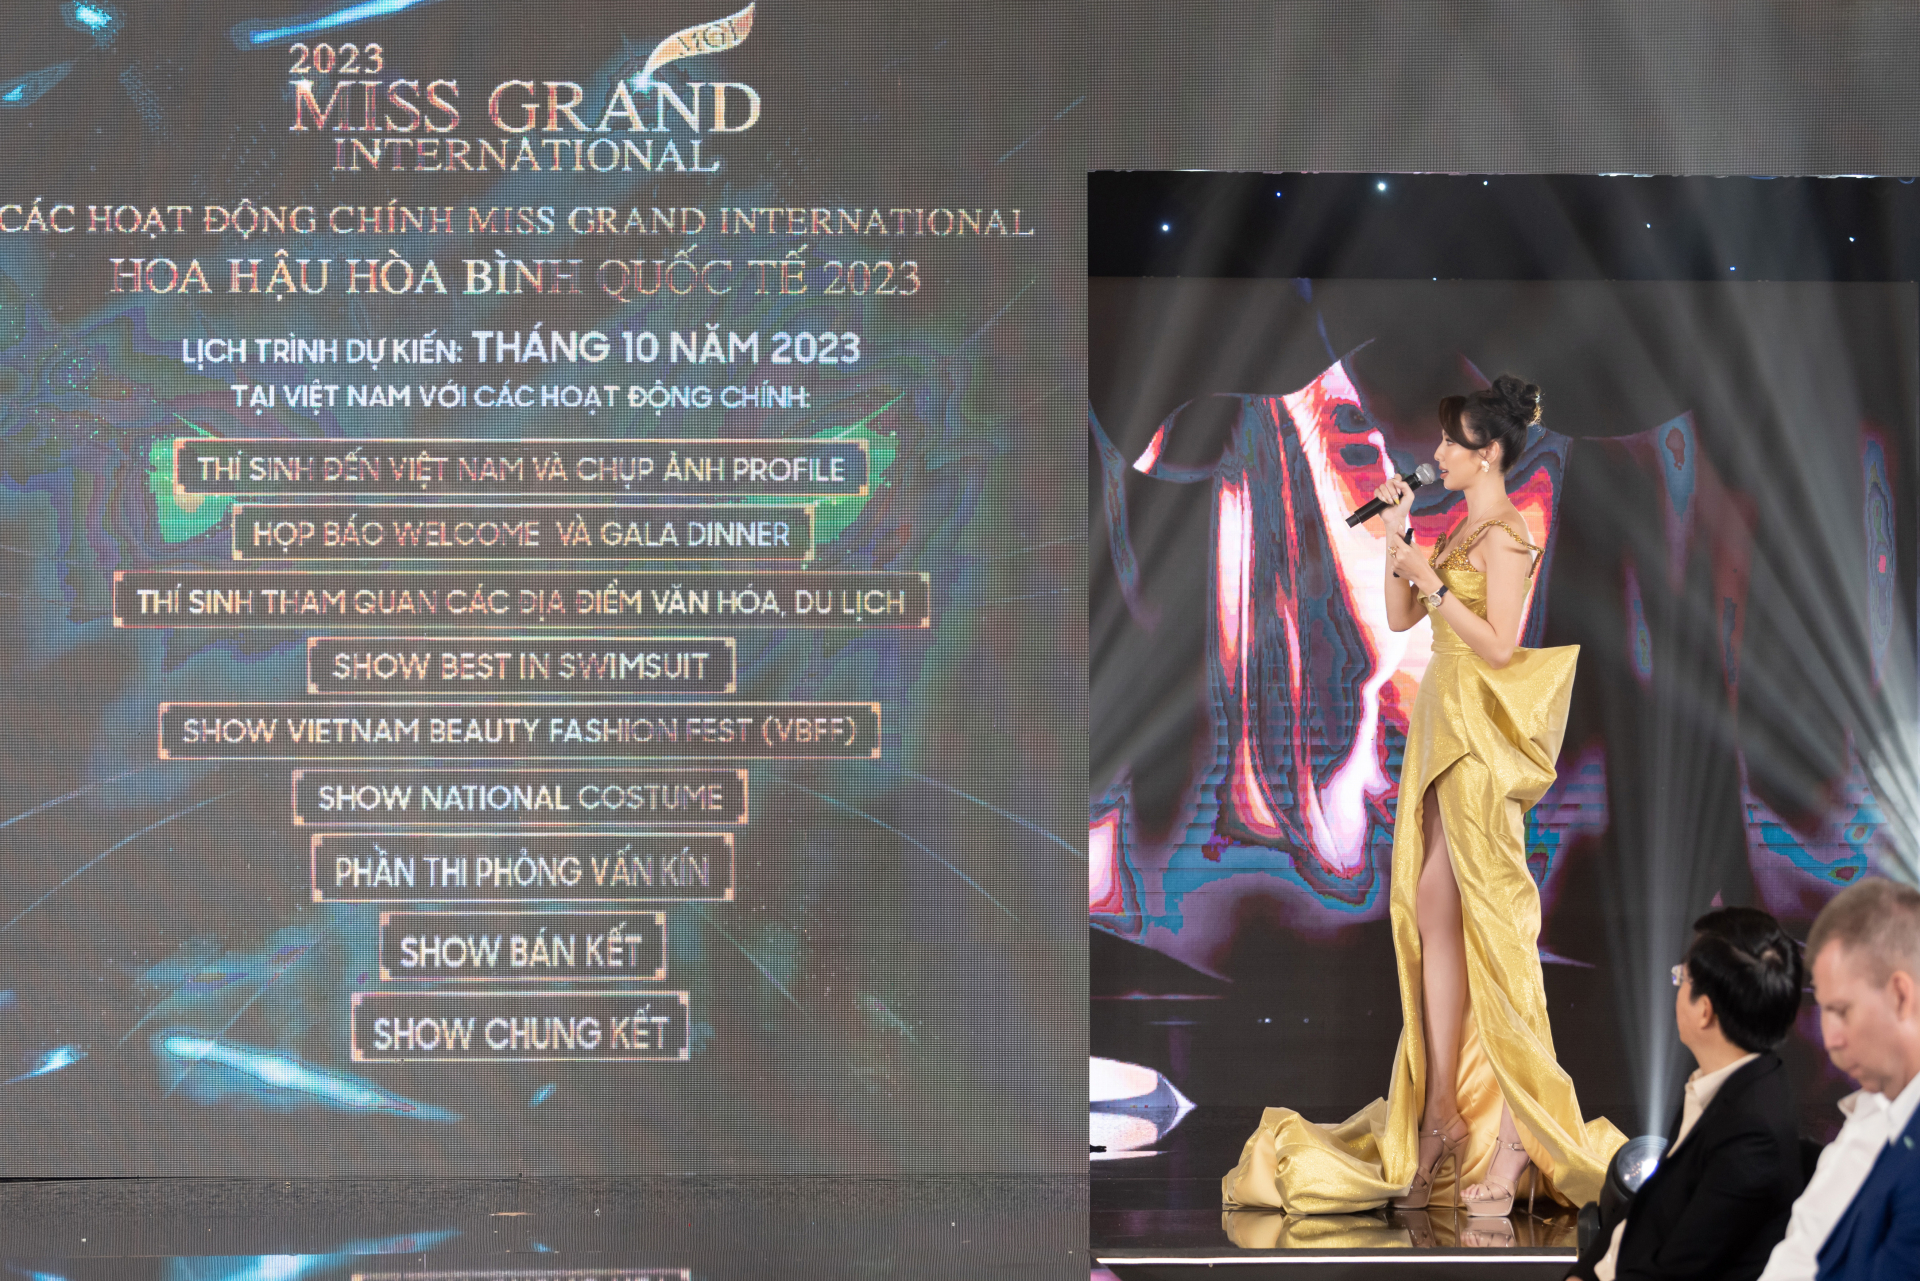 Gạt bỏ ồn ào, chủ tịch Miss Grand International thông báo đến Việt Nam - ảnh 3